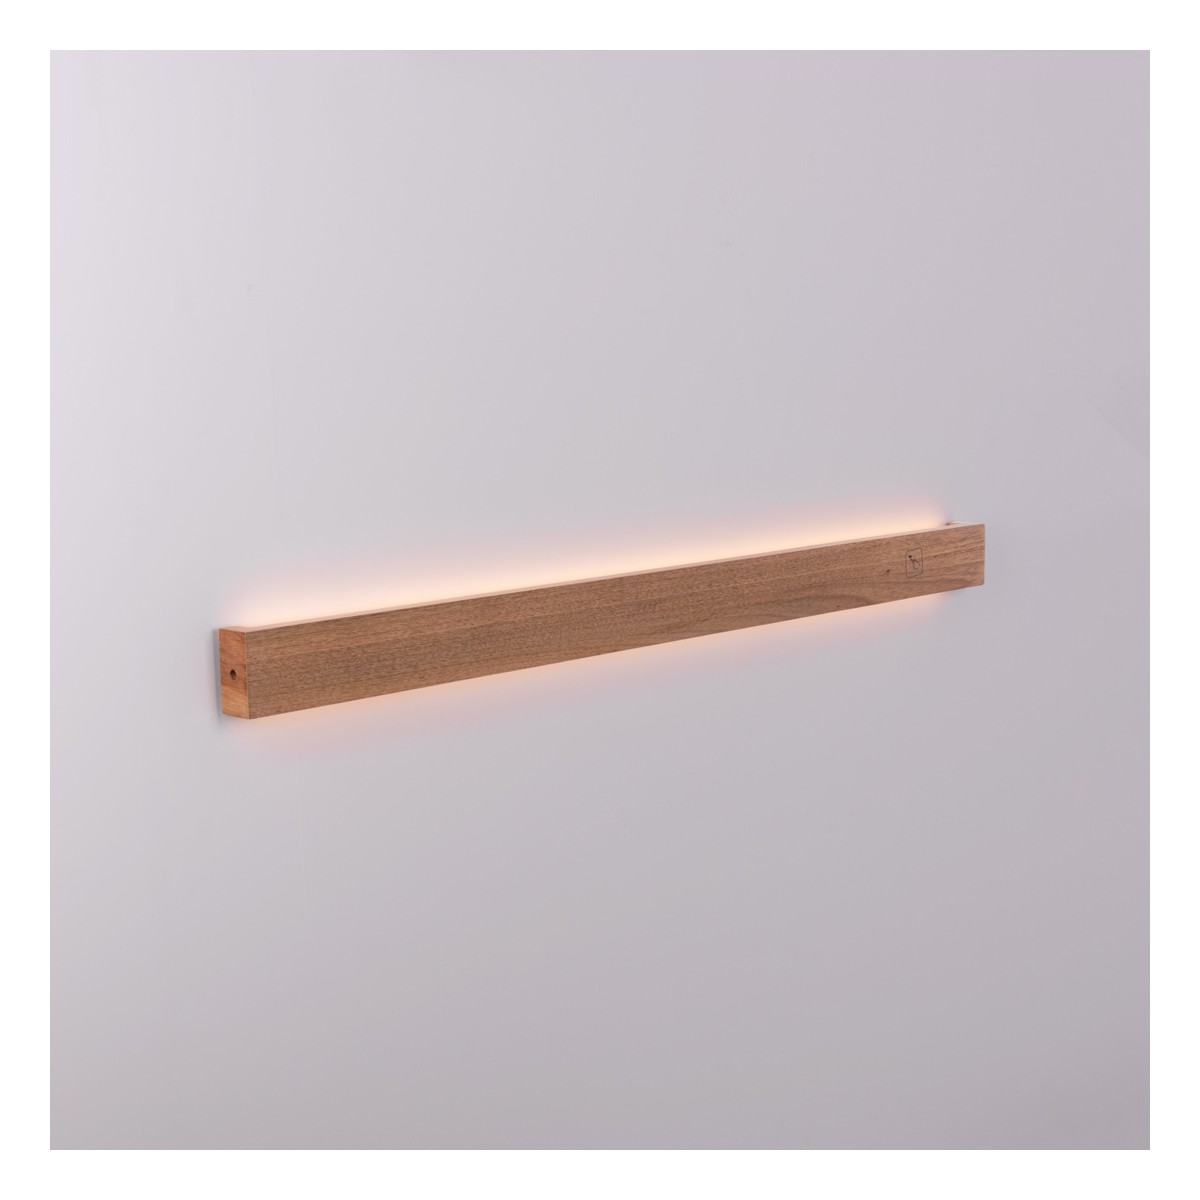 Applique lineare in legno "Wooden" - 24W - 100cm